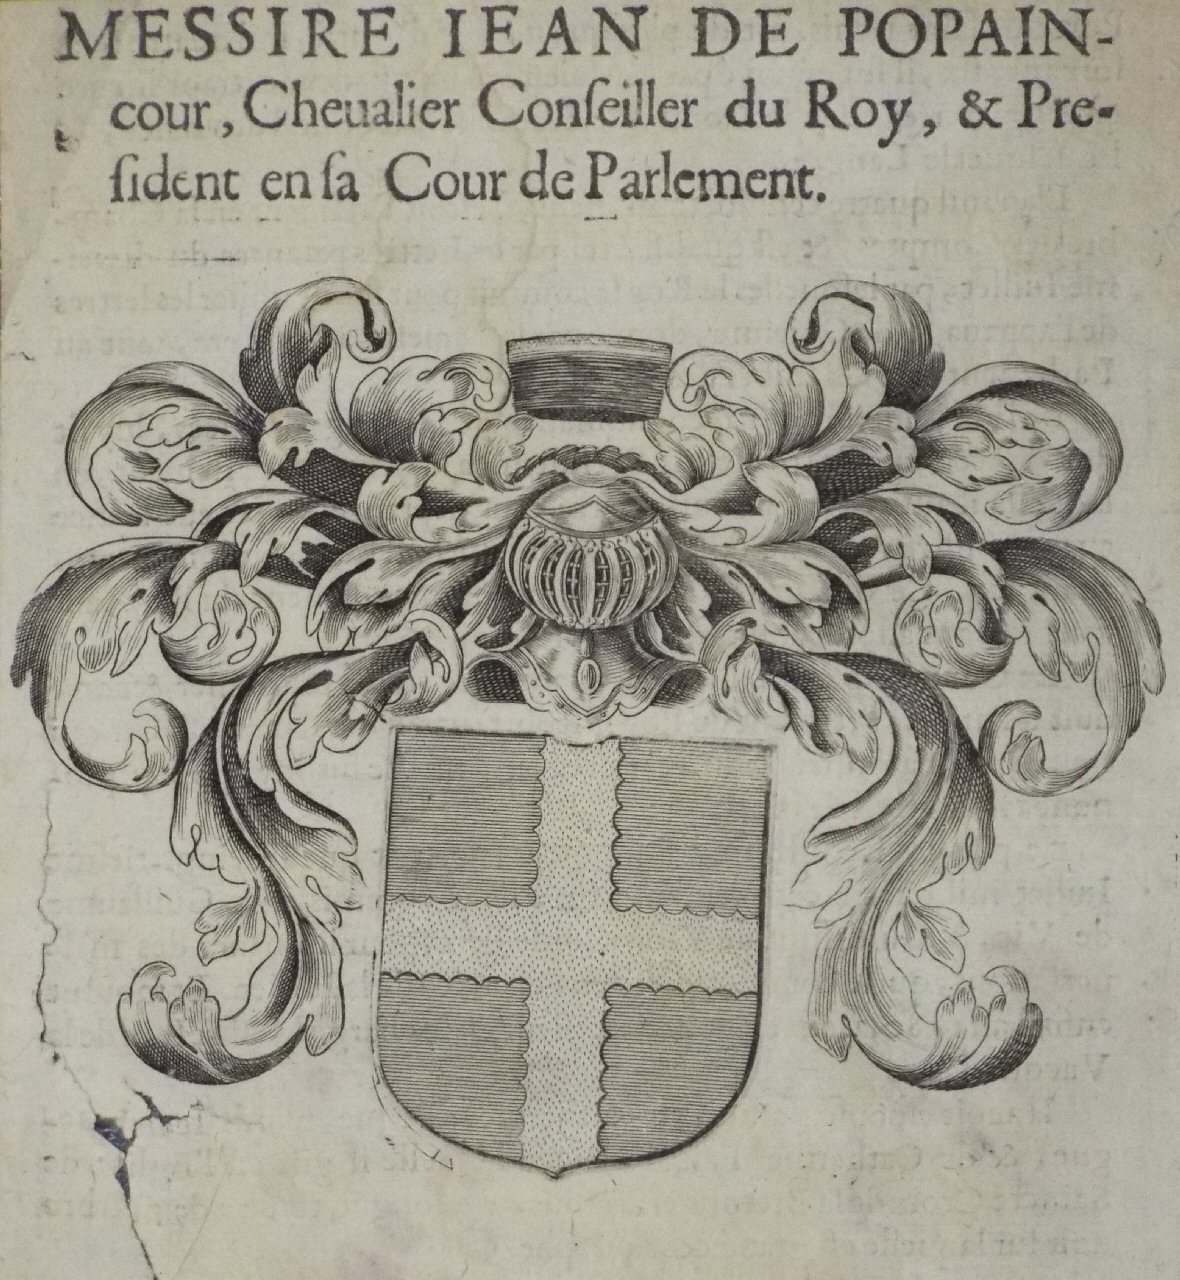 Print - Messire Jean de Popain-cour, Chevalier Conseiller du Roy, & President en sa cour de Parlement.